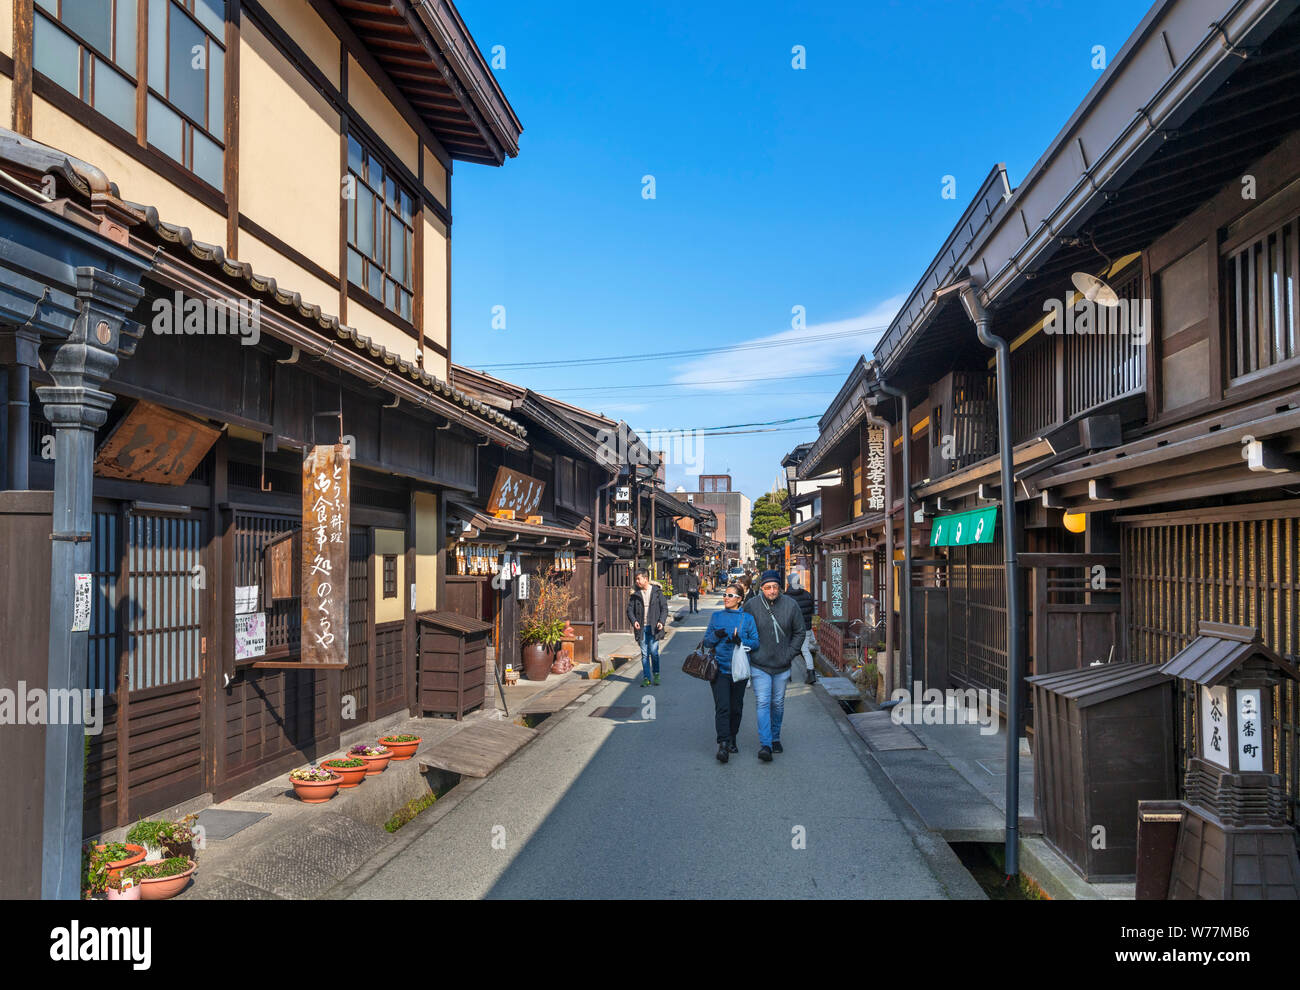 Traditionelle japanische Bauten auf Kamisannomachi, eine Straße in der historischen Altstadt Sanmachi-suji Bezirk, Takayama, Präfektur Gifu, Honshu, Japan Stockfoto